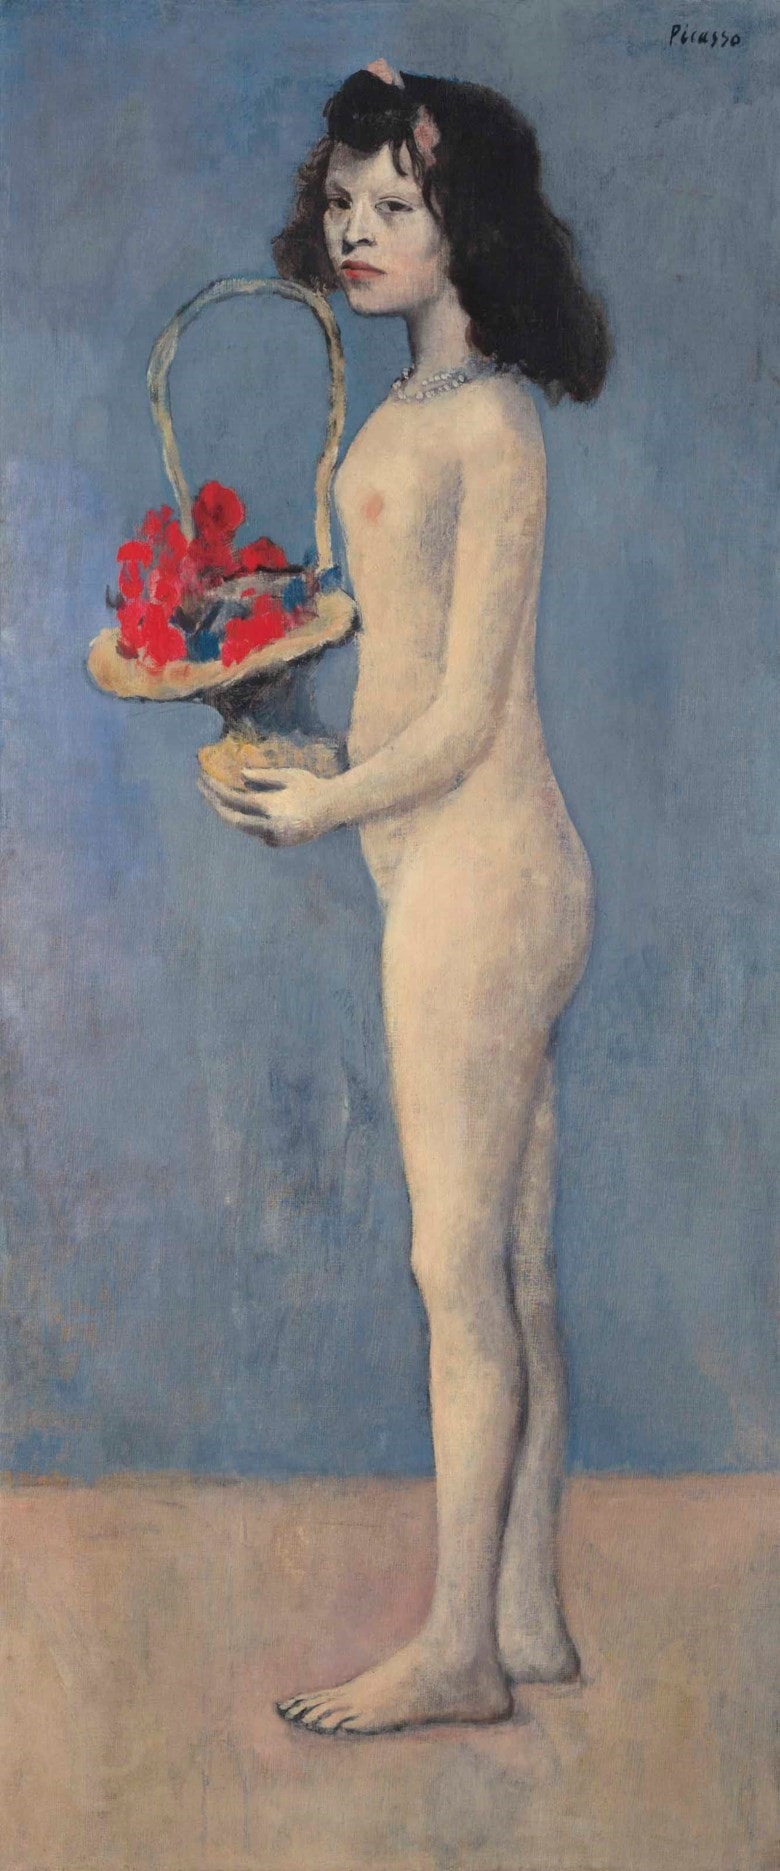 Fillette à la corbeille fleurie- Pablo Picasso (1881-1973)